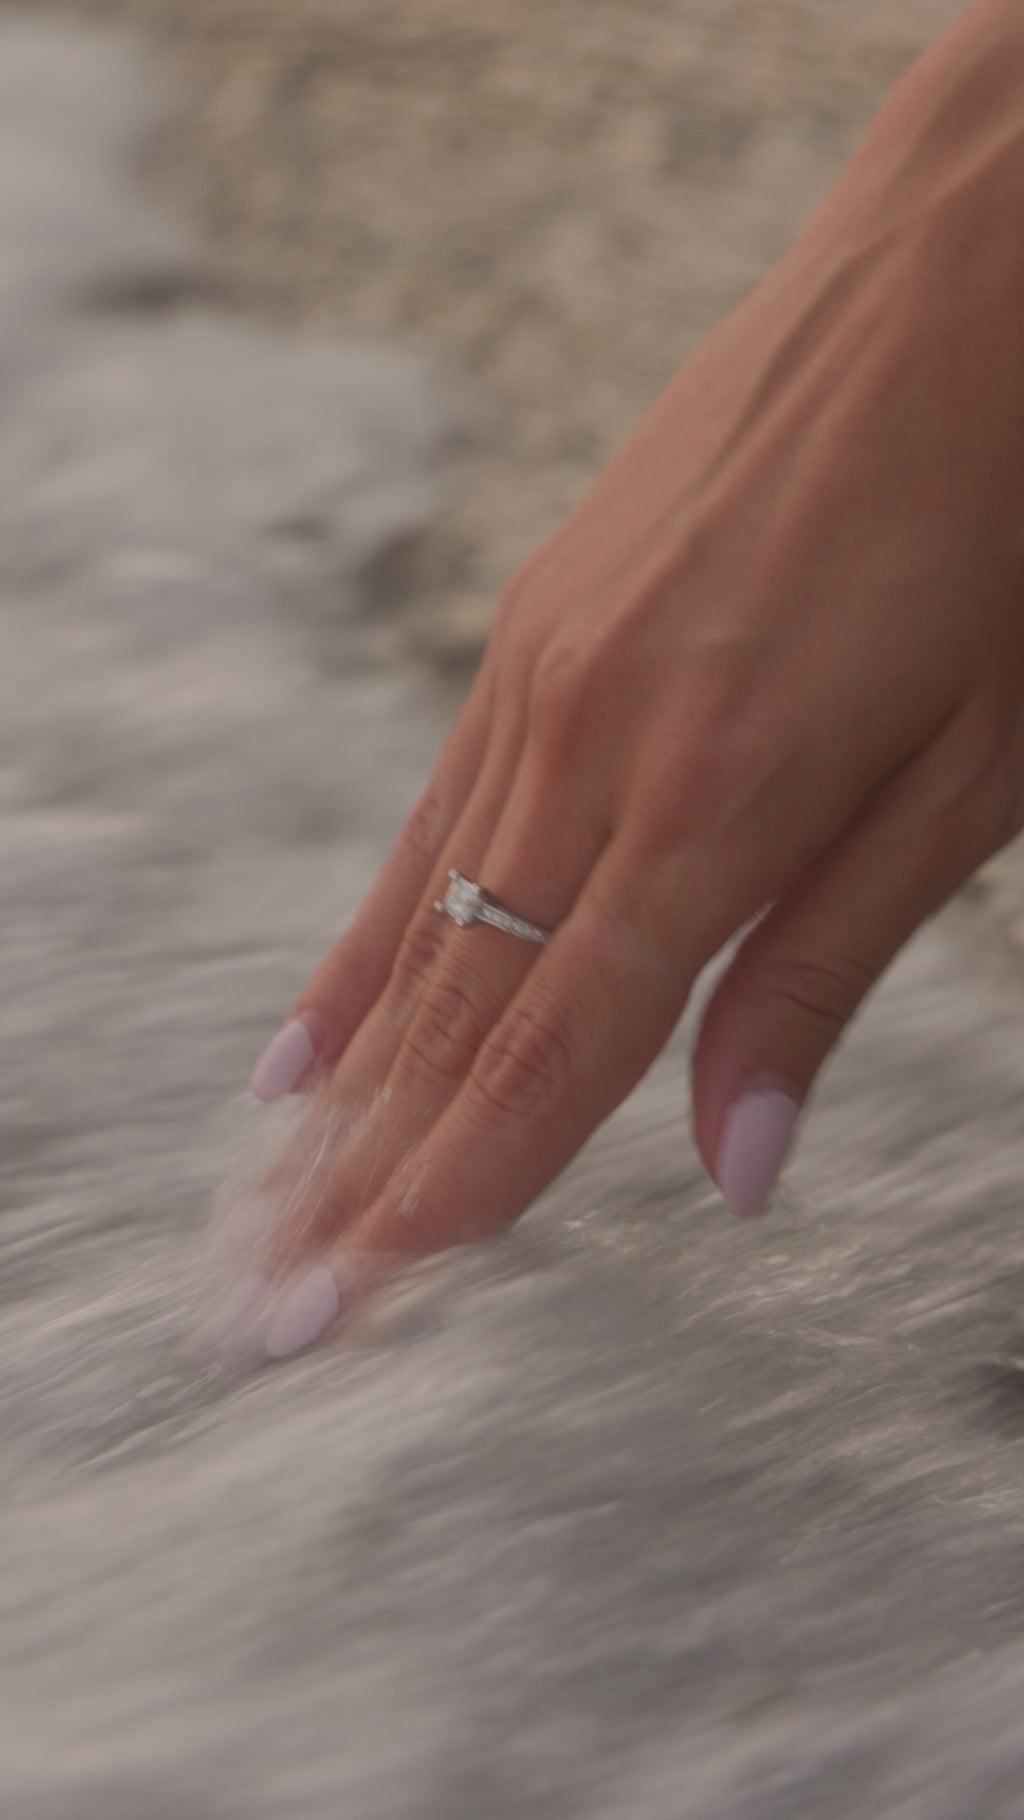 Λευκόχρυσο μονόπετρο δαχτυλίδι με κεντρικό διαμάντι, πλαϊνές πέτρες από διαμάντια και καστόνι με τέσσερα δόντια, φορεμένο σε γυναικείο χέρι.